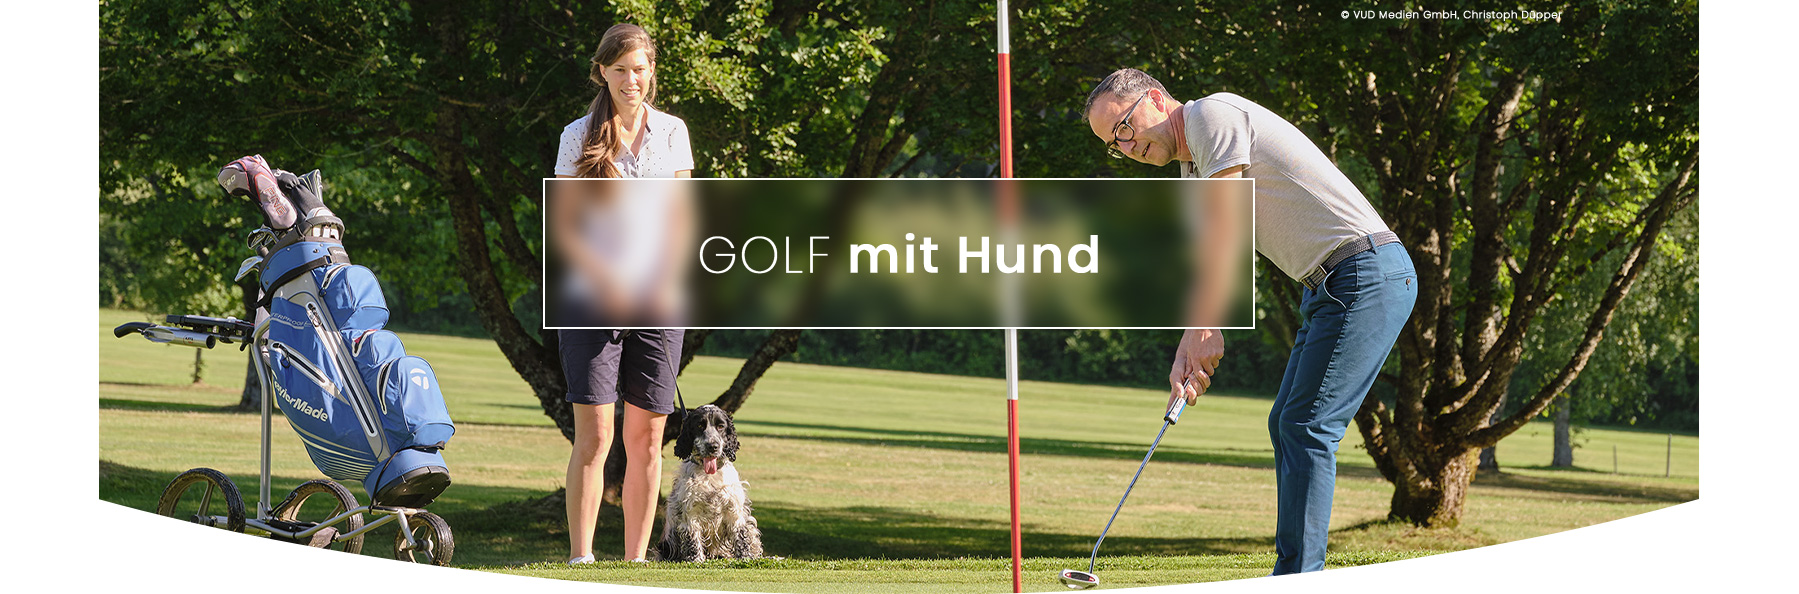 Golf-mit-Hund_Header1